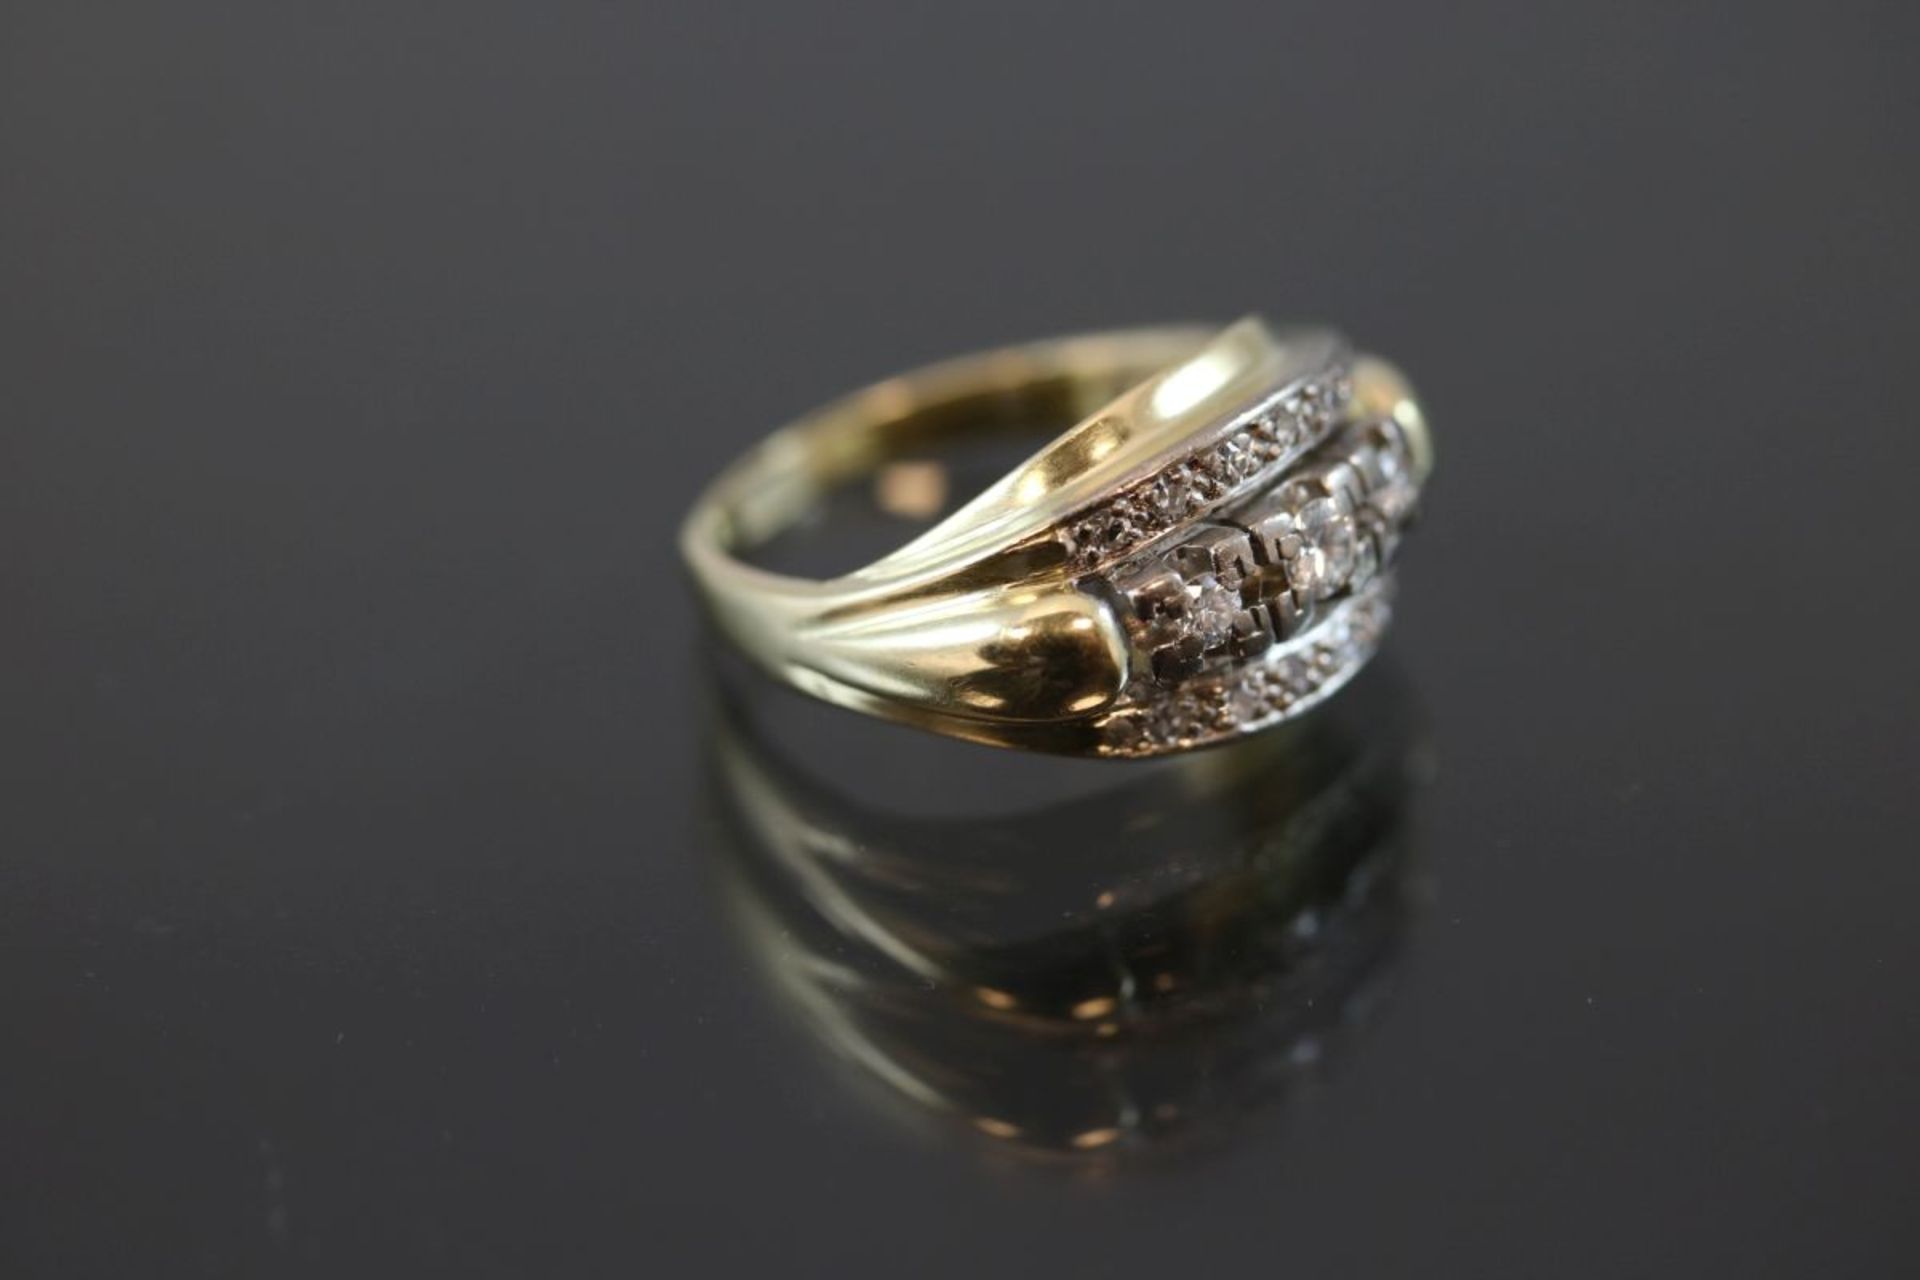 Brillant-Diamant-Ring, 585 Gelbgold4,9 Gramm Brillanten/Diamanten, ca. 0,30 ct., w/si. Ringgröße: - Bild 3 aus 3